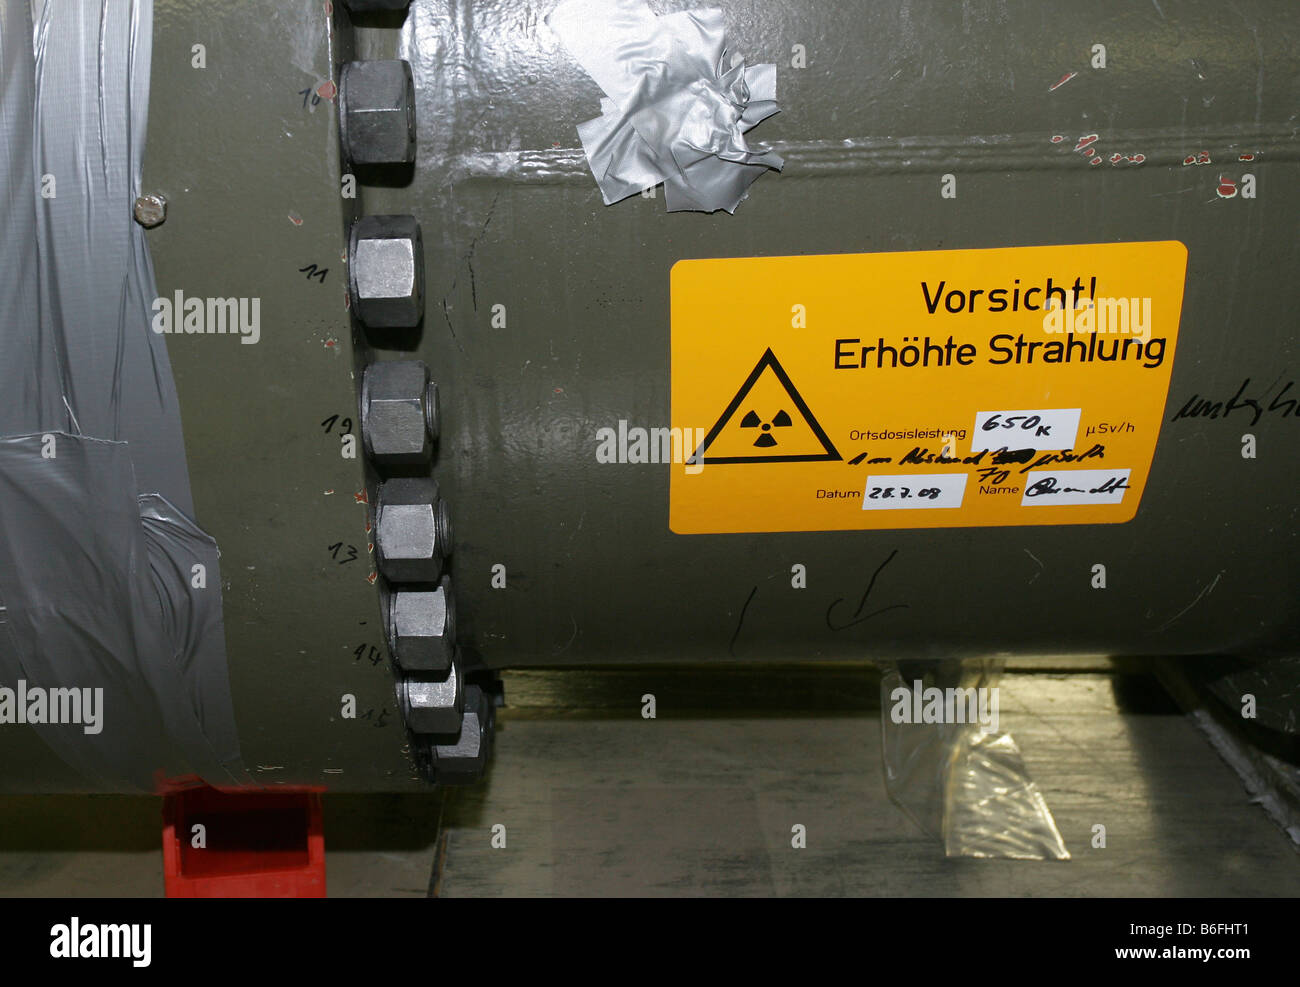 Lavori di smantellamento dell'energia atomica reattore a Muelheim-Kaerlich, un segno su un smontaggio scambiatore di calore avvertimento contro incre Foto Stock